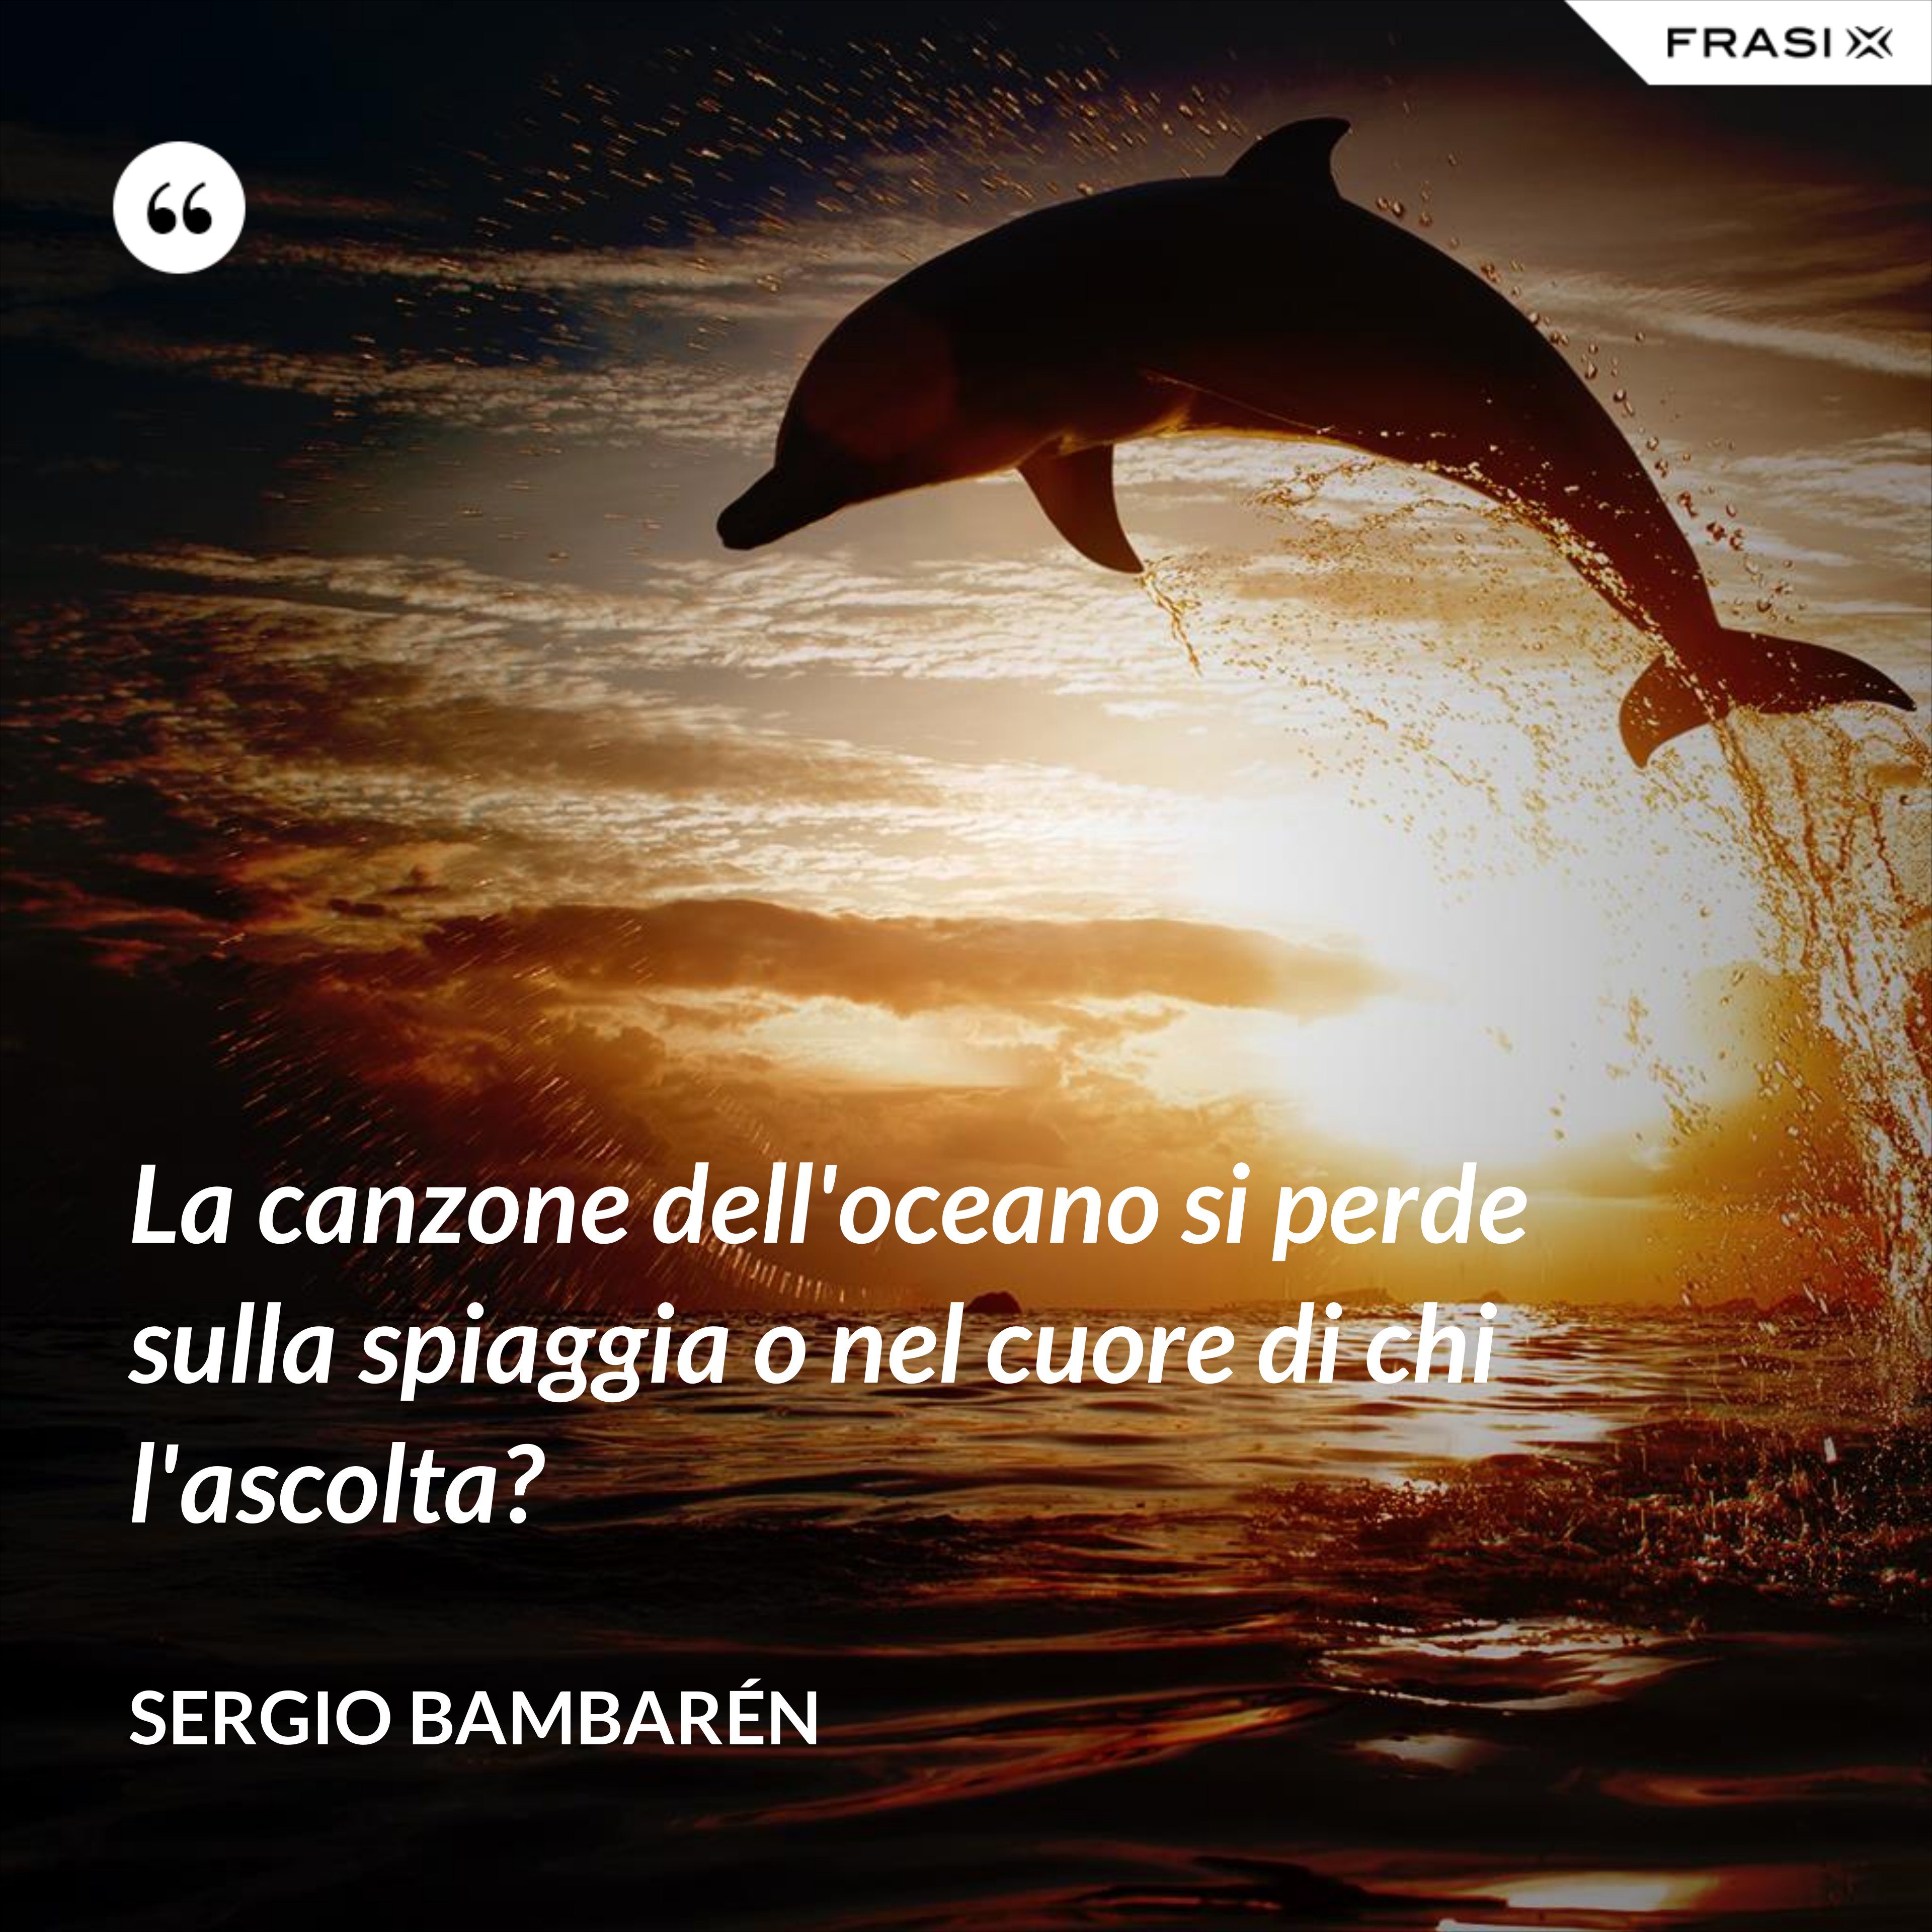 La canzone dell'oceano si perde sulla spiaggia o nel cuore di chi l'ascolta? - Sergio Bambarén